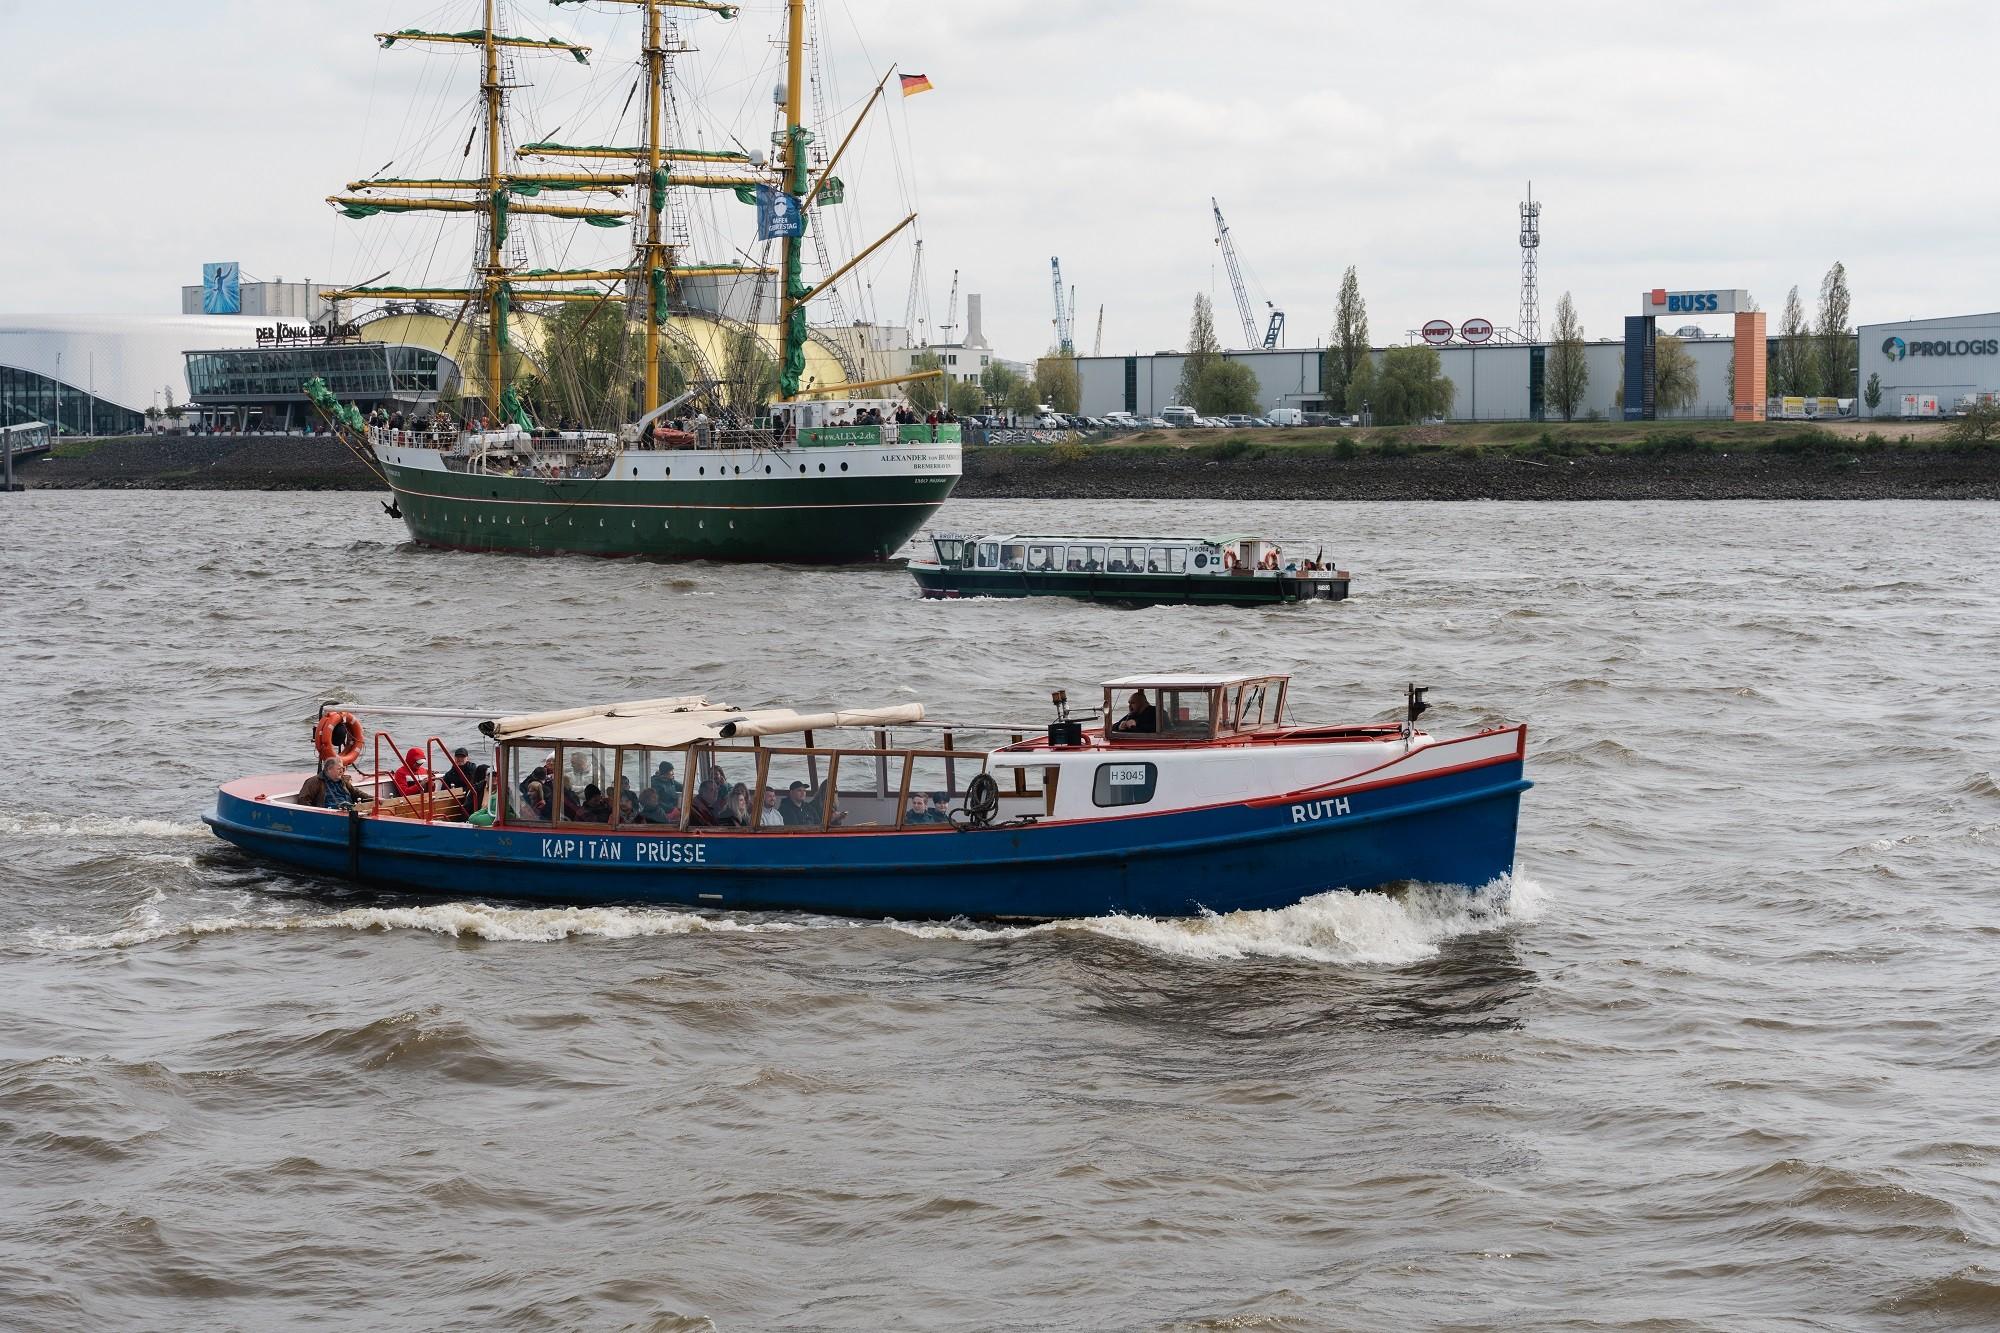 Barkasse Ruth im Hamburger Hafen mit Segelschiff im Hintergrund